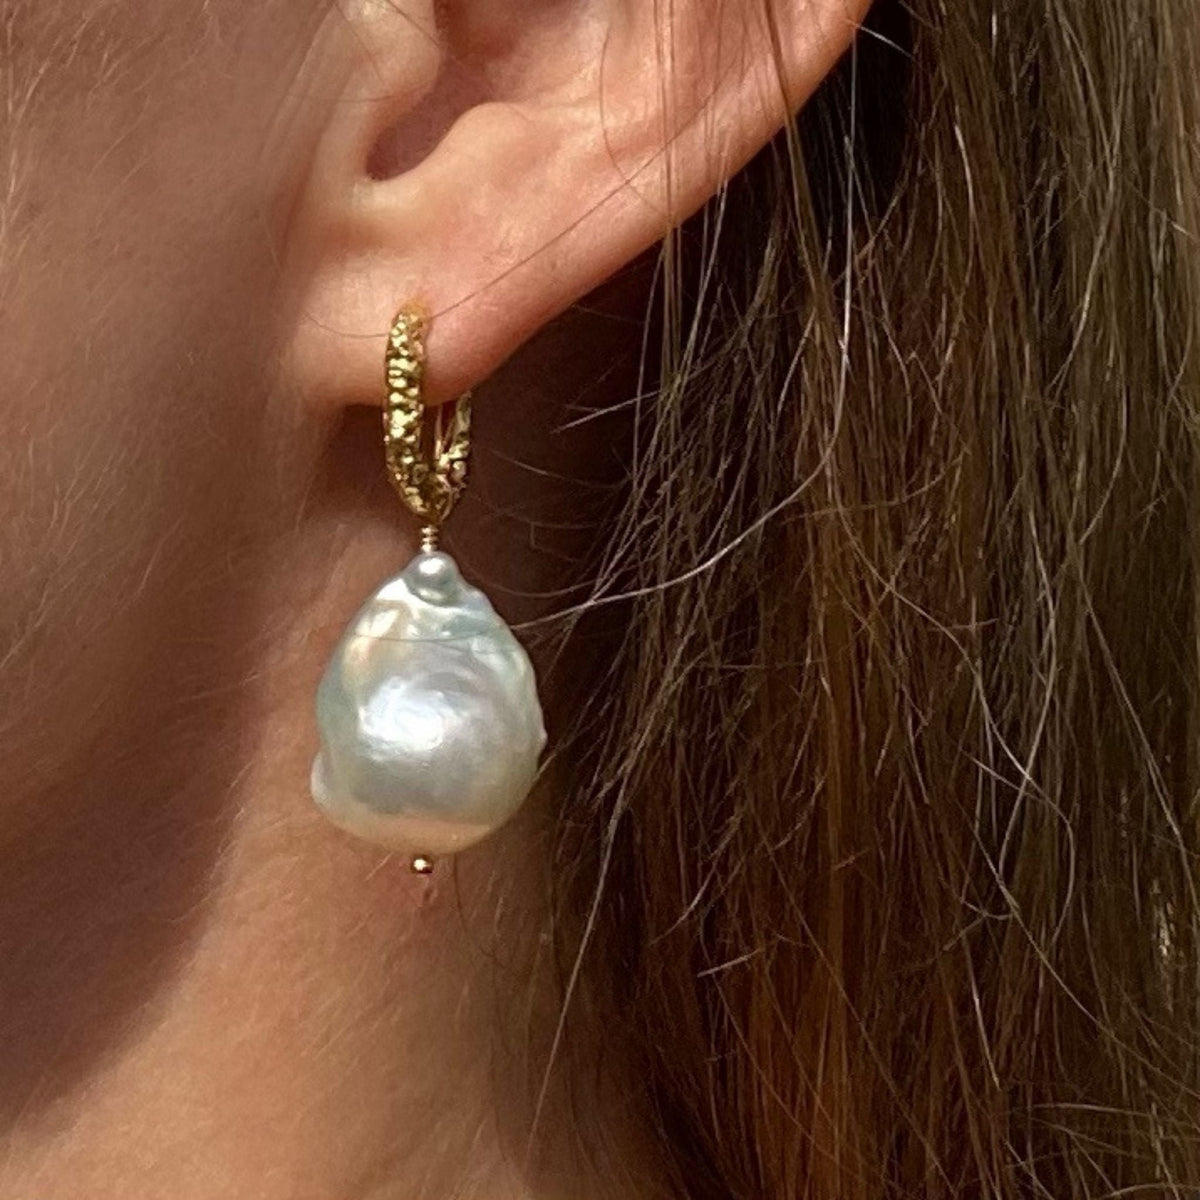 Sisterhood Earrings - Textured Hoop Earrings with Baroque Pearls